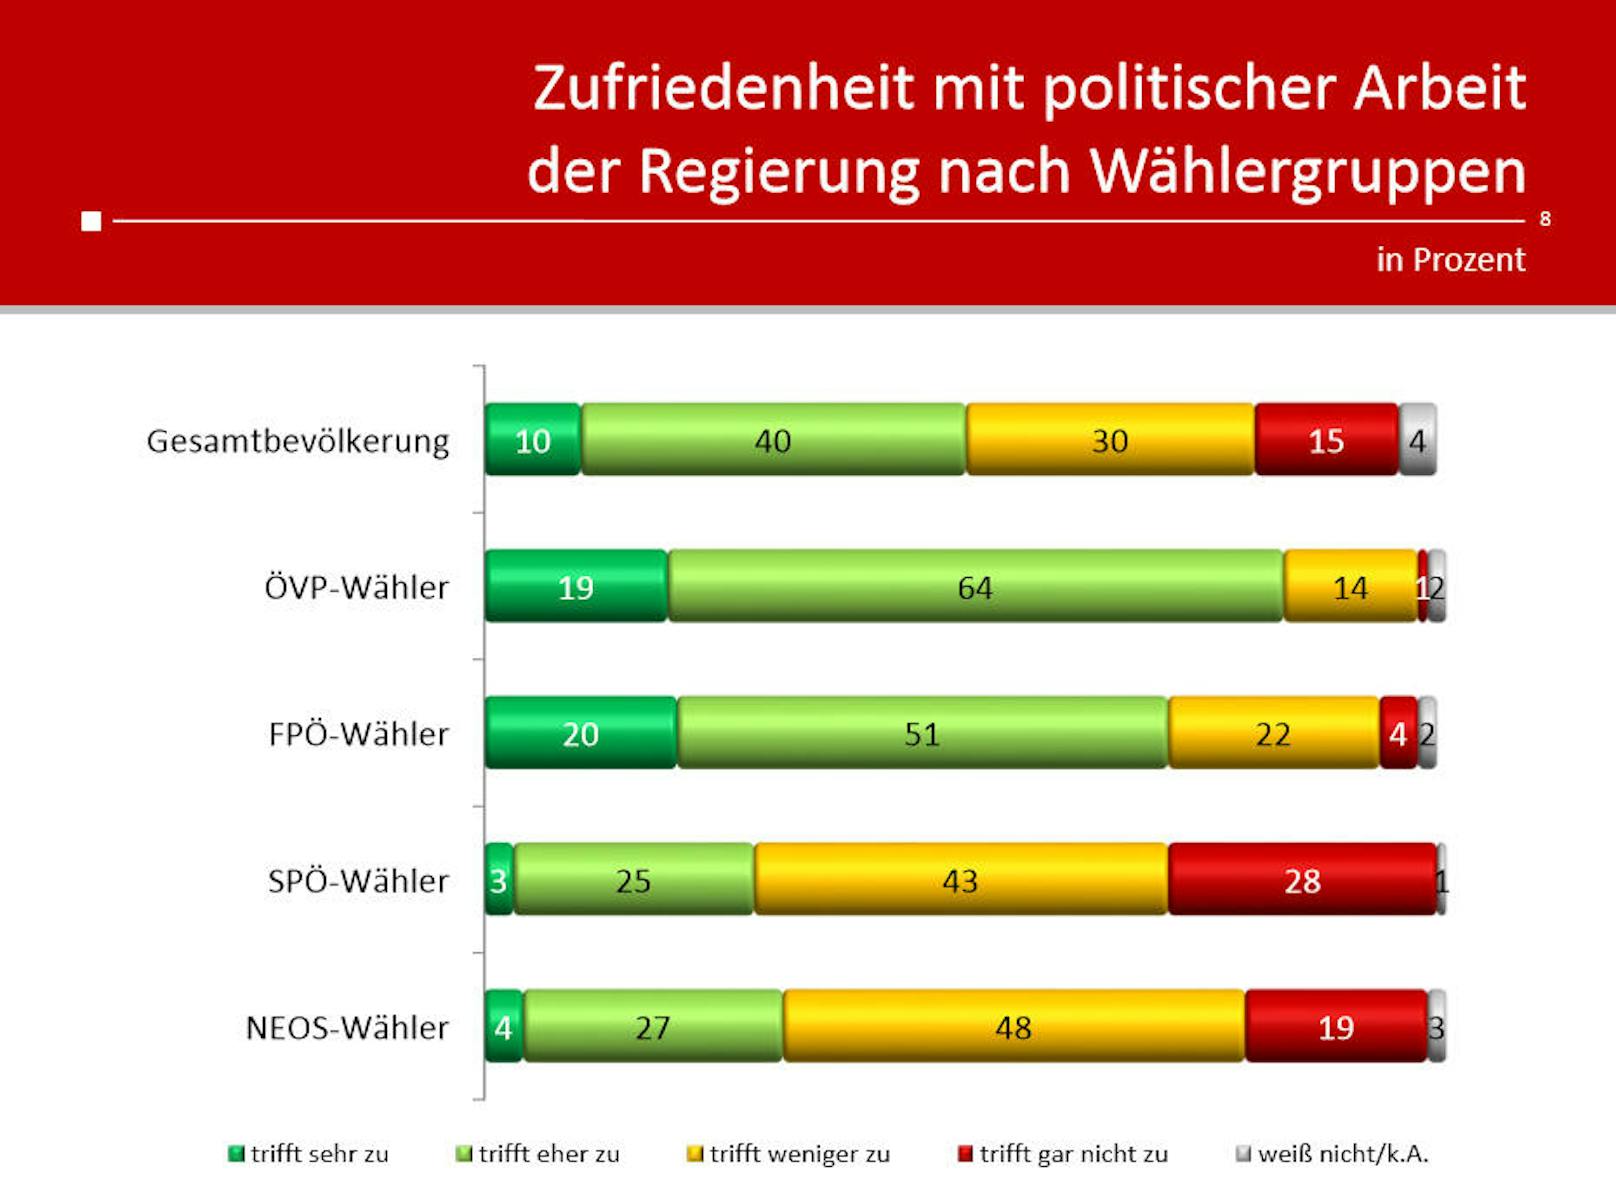 Erwartungsgemäß sehen SPÖ-Wähler die Regierung besonders kritisch, auch unter den NEOS-Anhängern gibt es viele Kritiker.